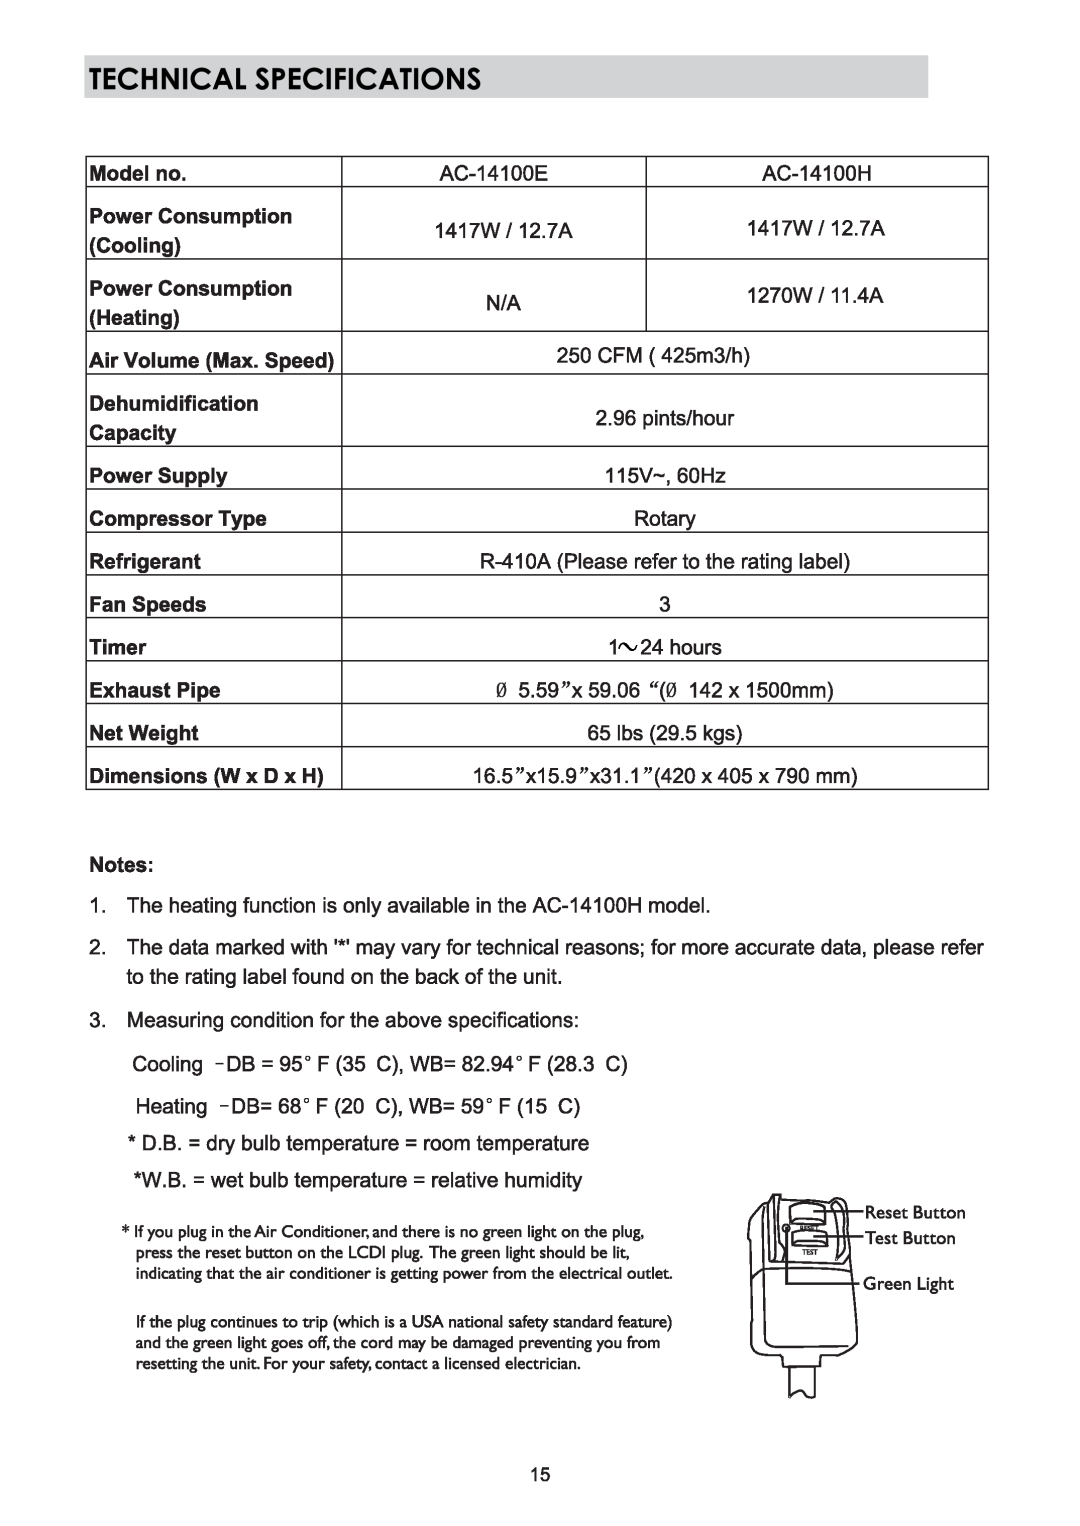 NewAir AC-14100H, AC-14100E owner manual 